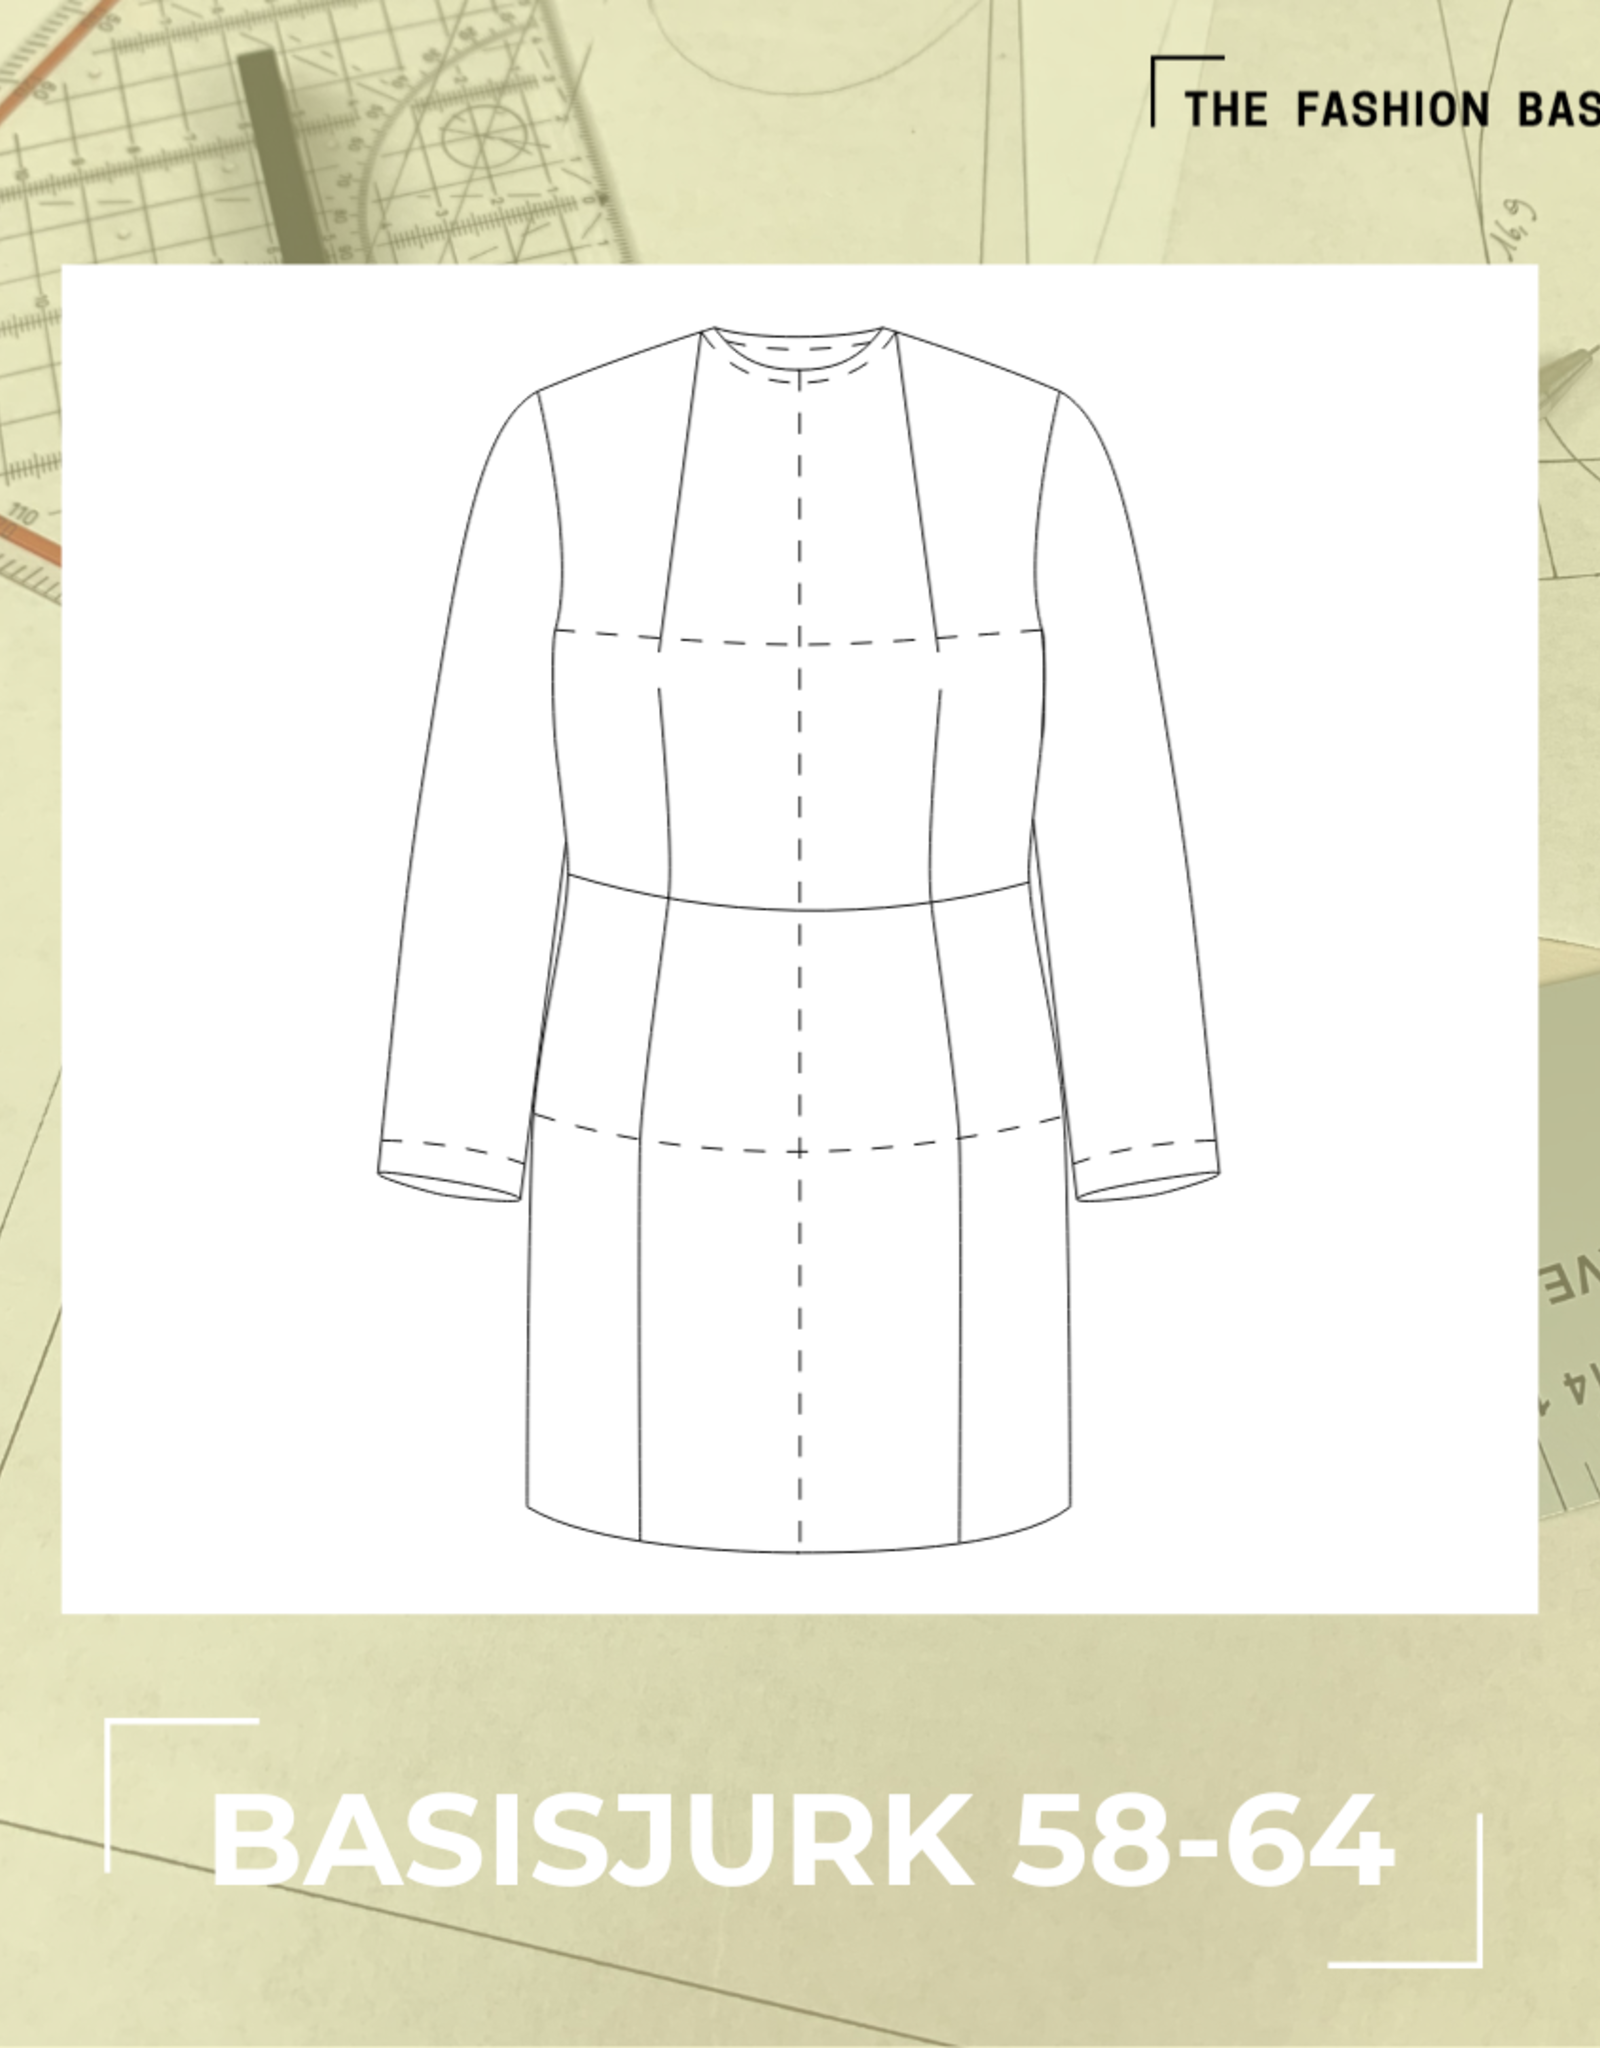 The Fashion Basement Basisjurk 58-64